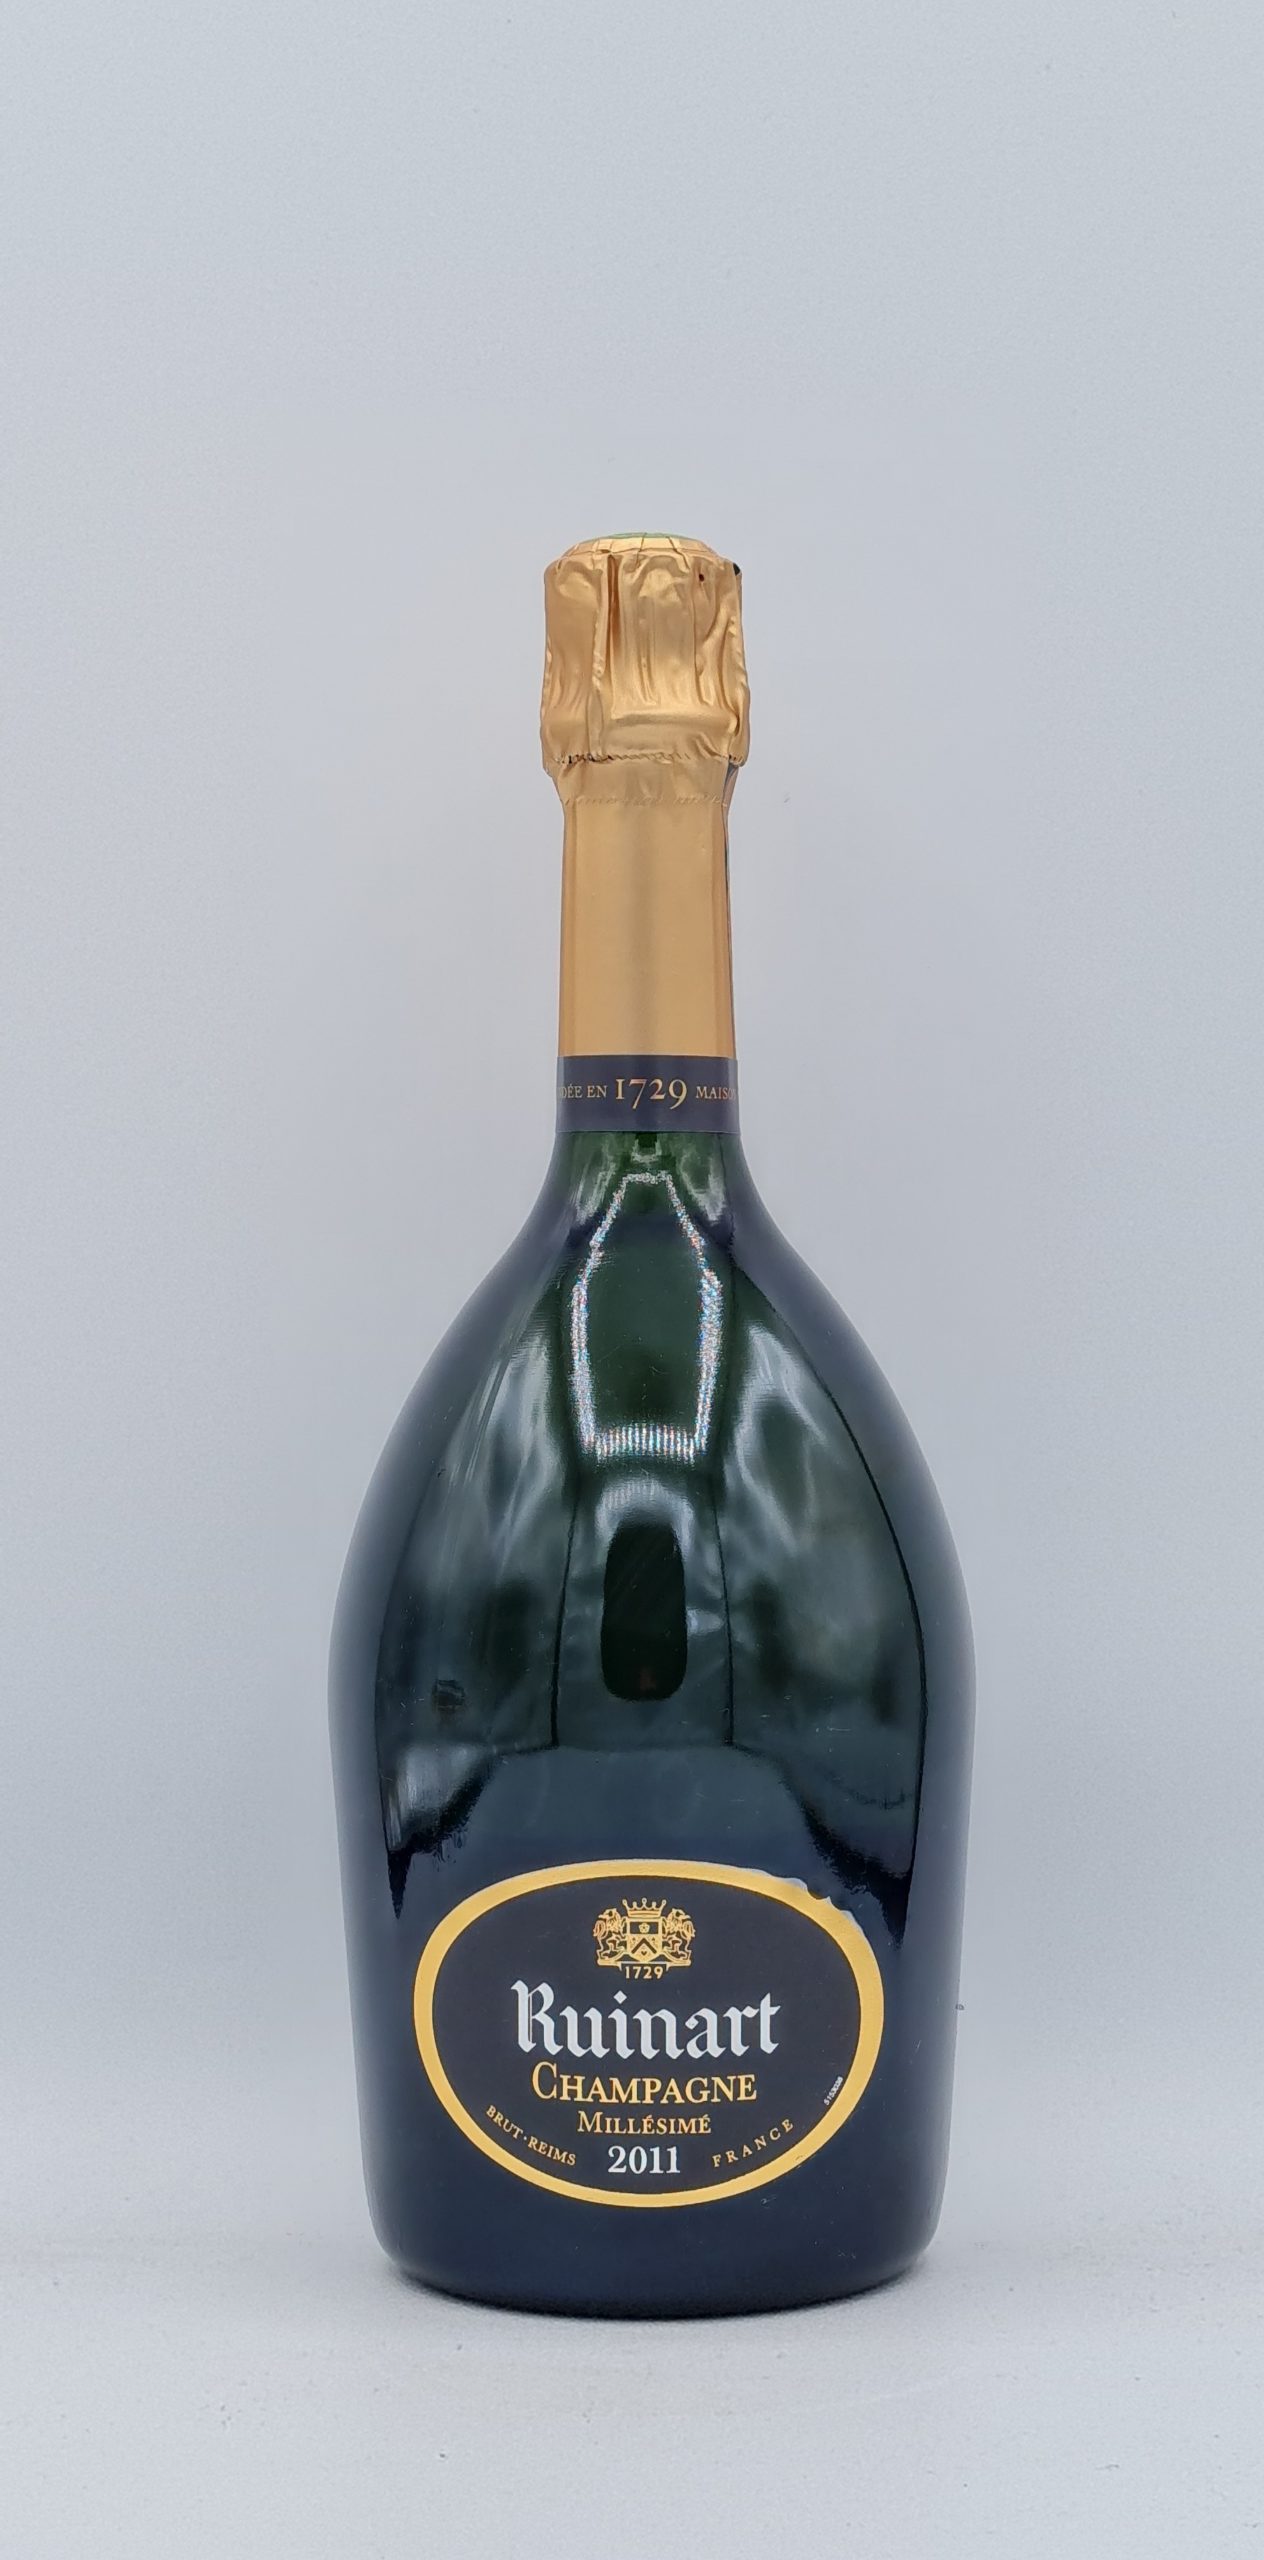 Champagne Ruinart millésimé 2011